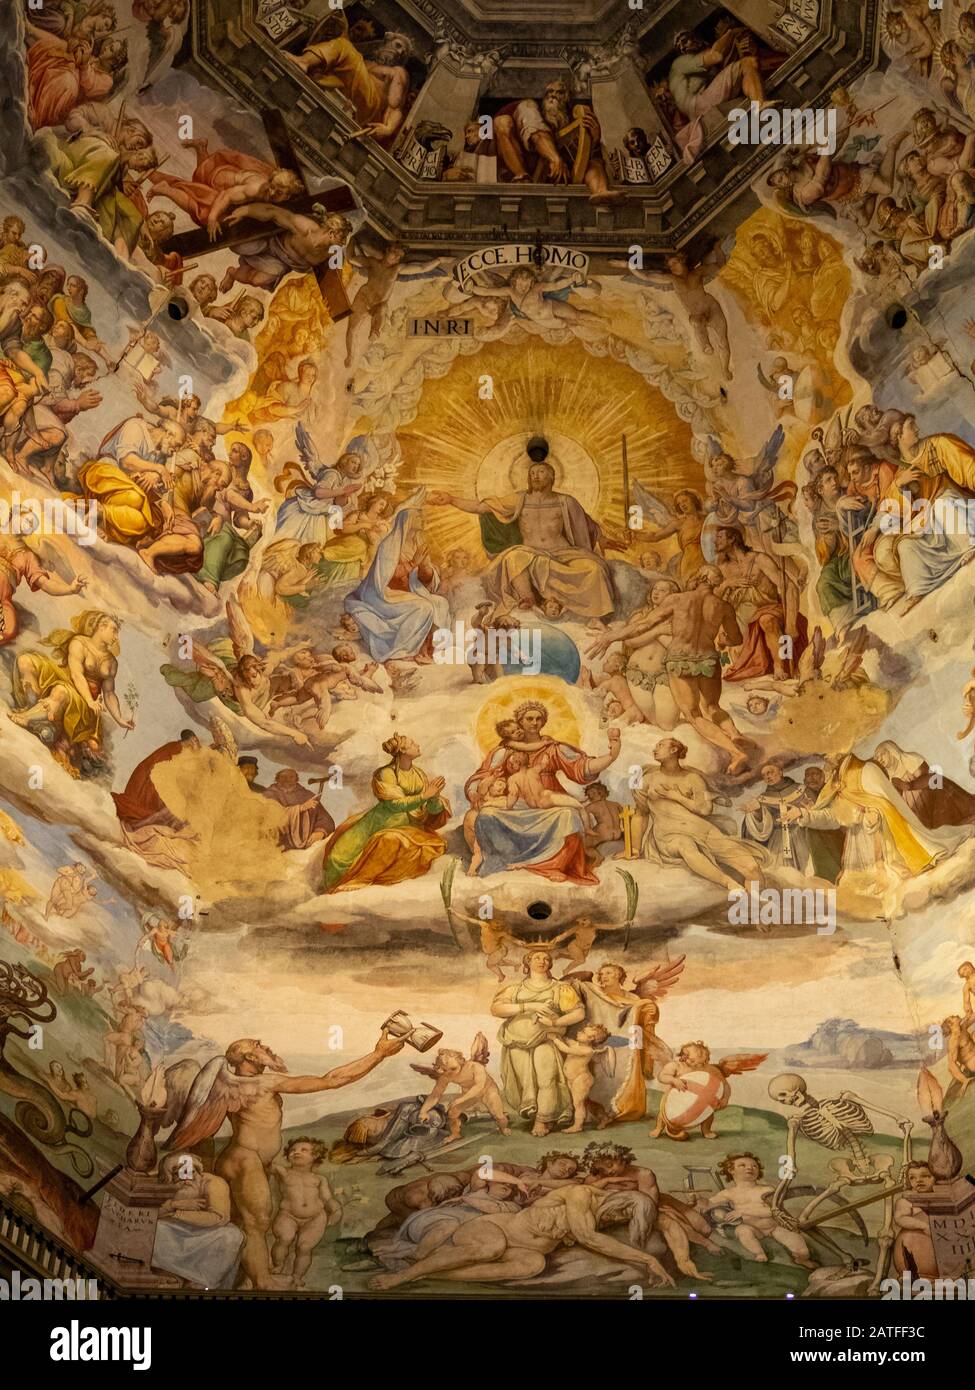 Particolare dell'affresco che copre l'interno della cupola di Santa Maria del Fiore, Firenze Foto Stock